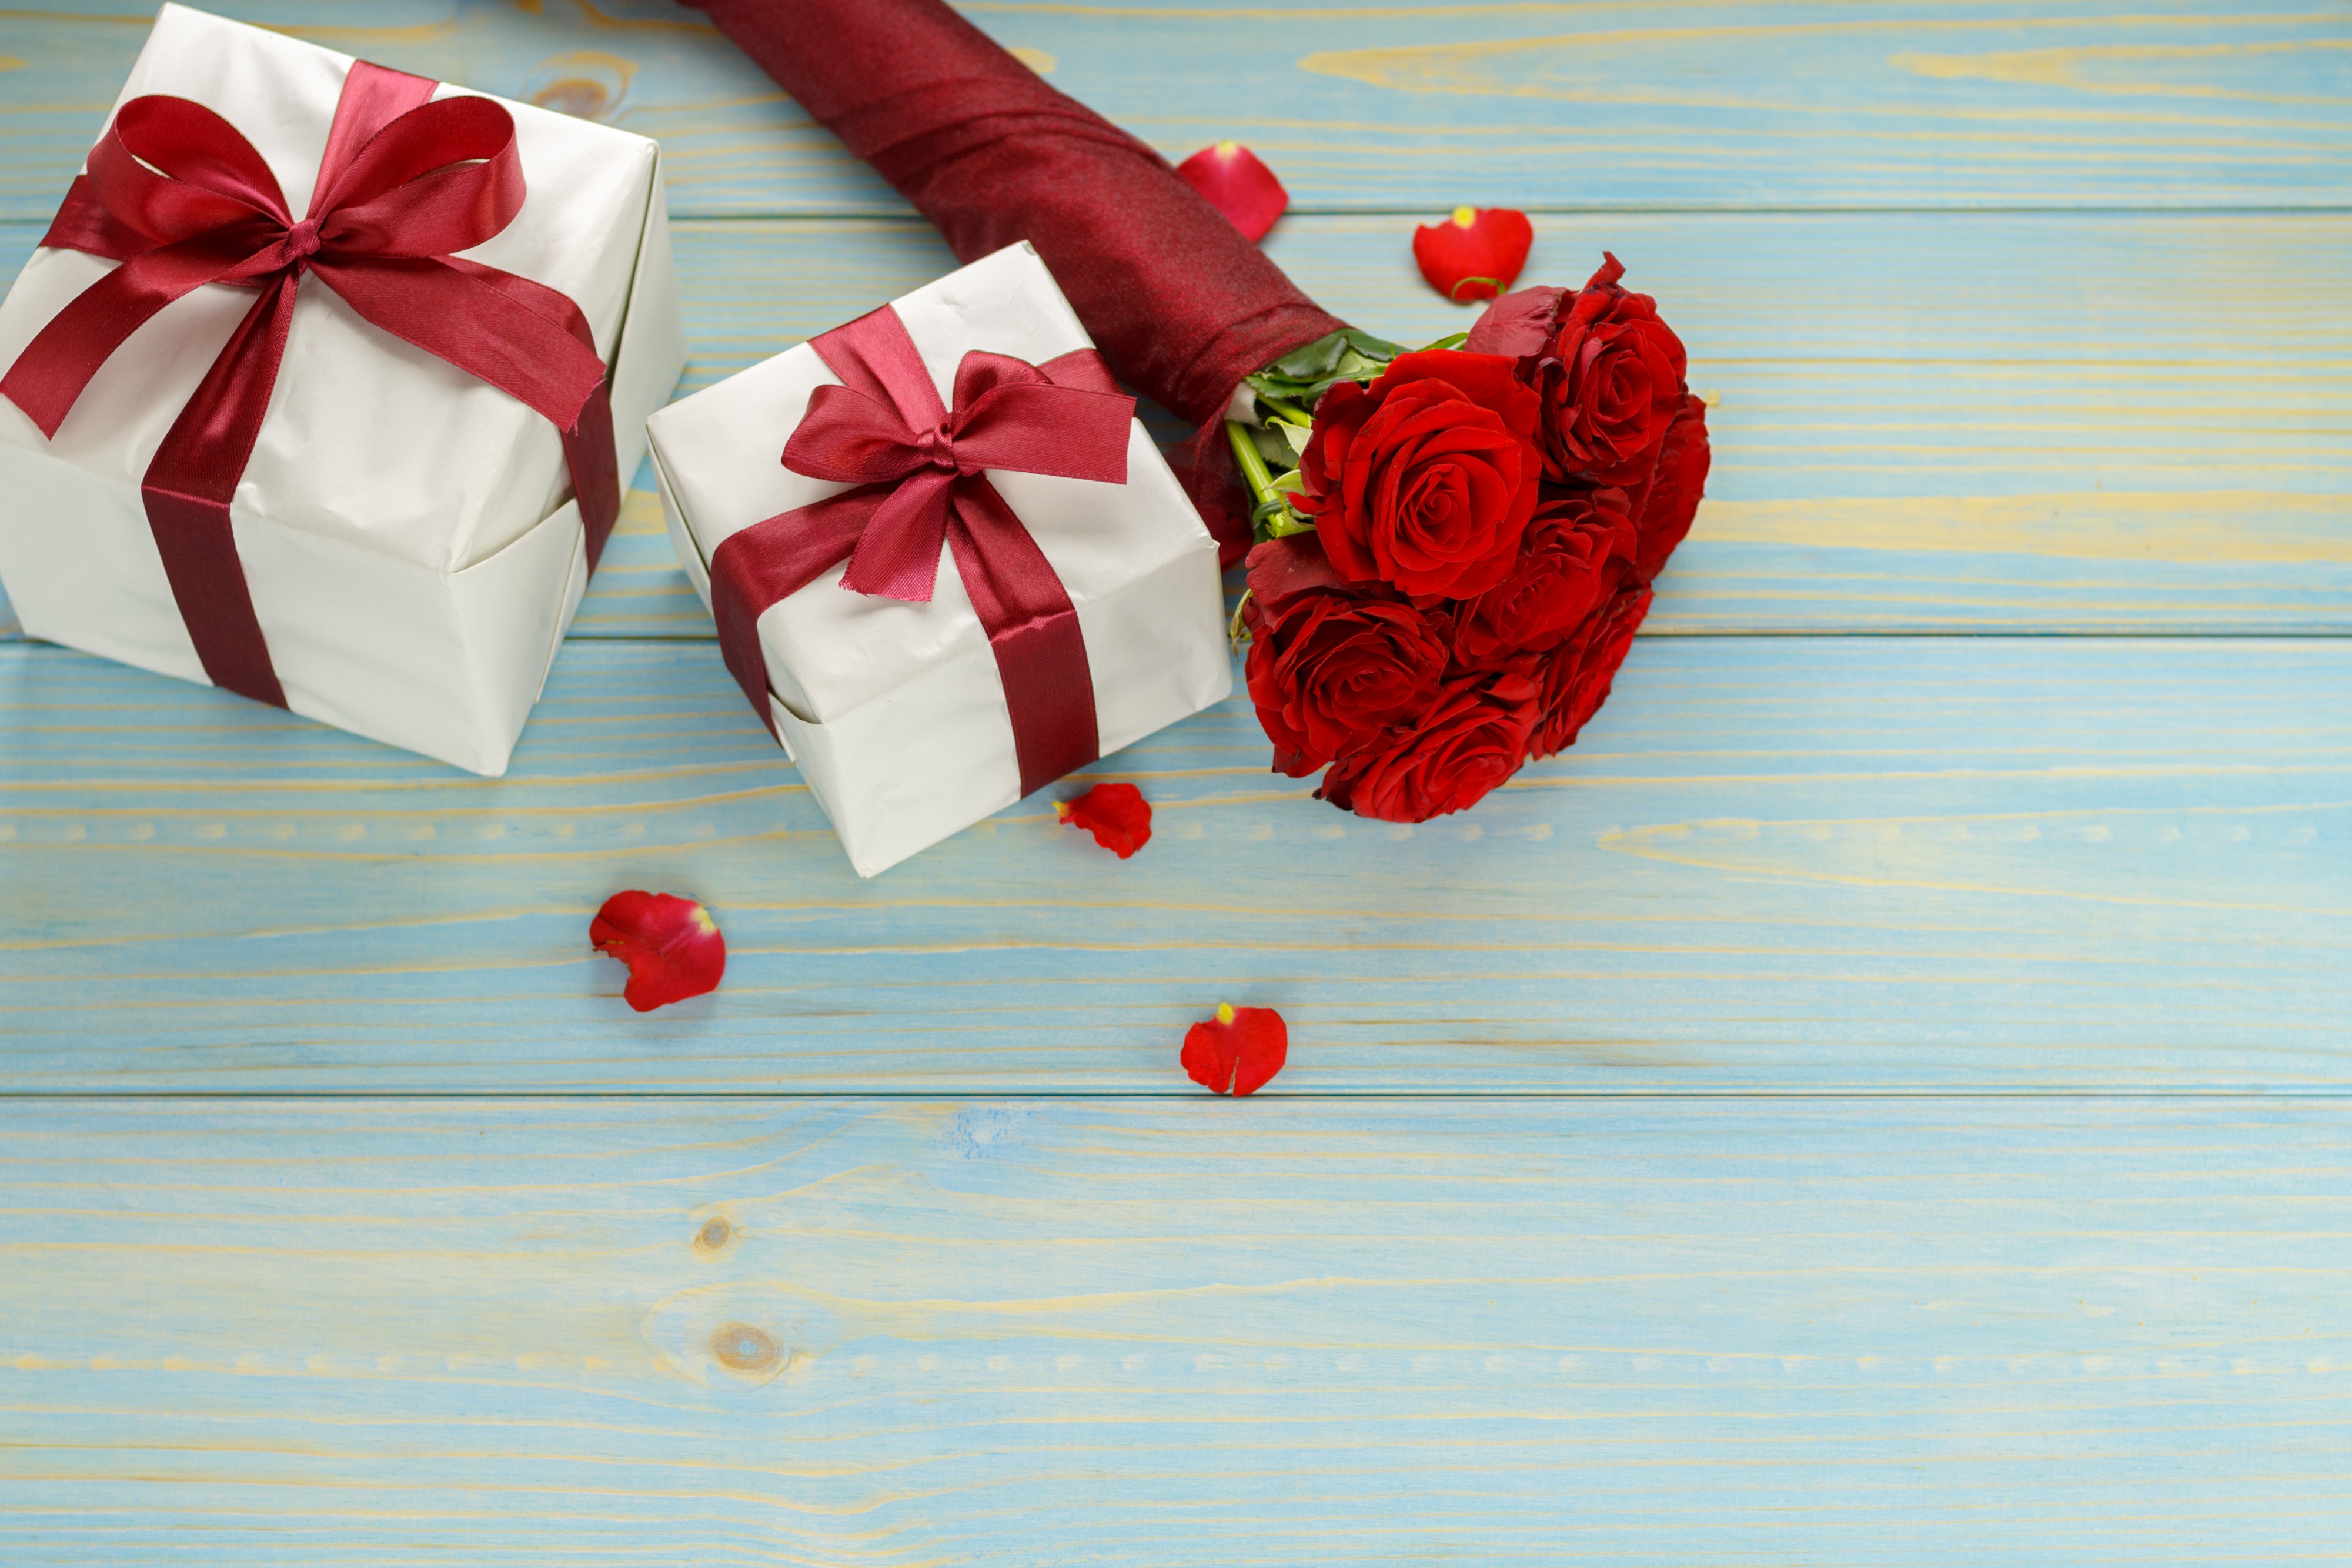 Скачать обои бесплатно Цветок, Роза, Подарки, Красная Роза, День Святого Валентина, Праздничные, Красный Цветок картинка на рабочий стол ПК